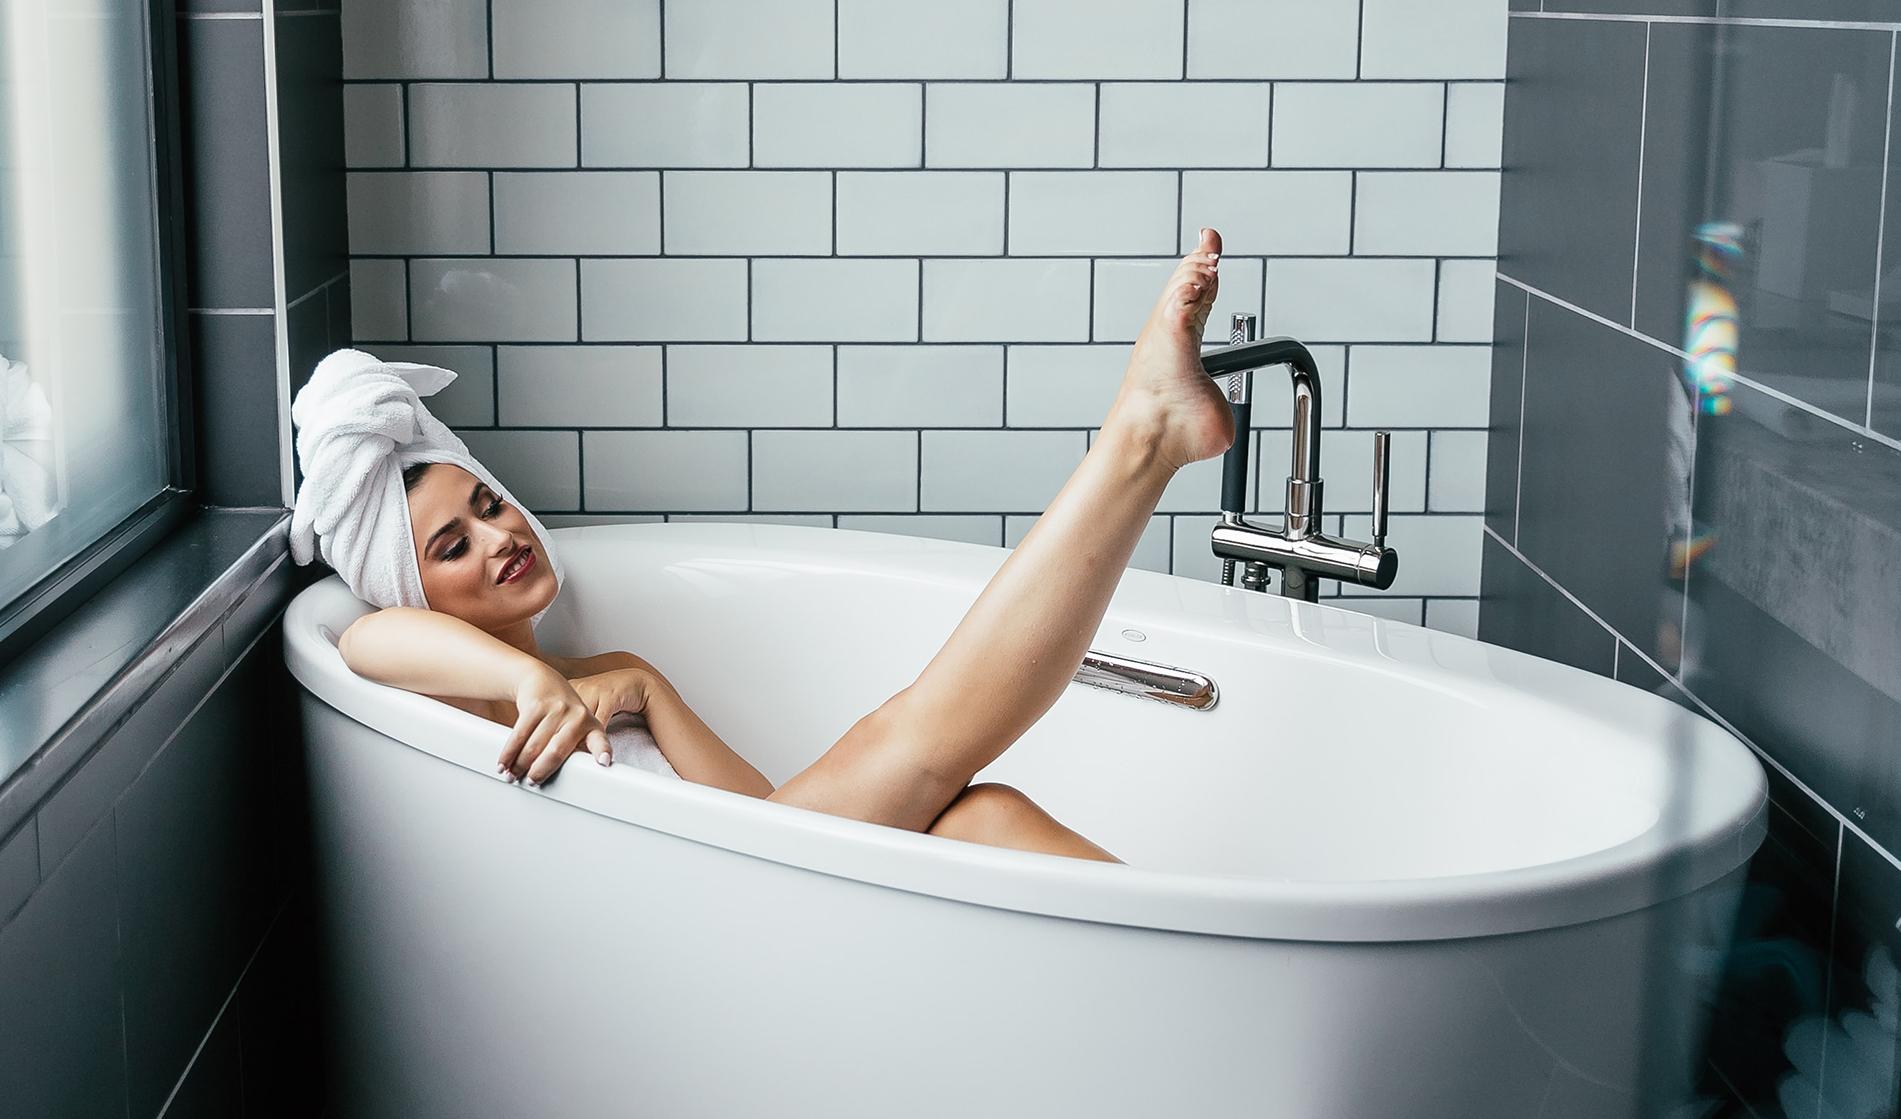 Doe een poging berekenen herinneringen Opvouwbaar bad is de beste uitvinding voor de badkamer - JFK